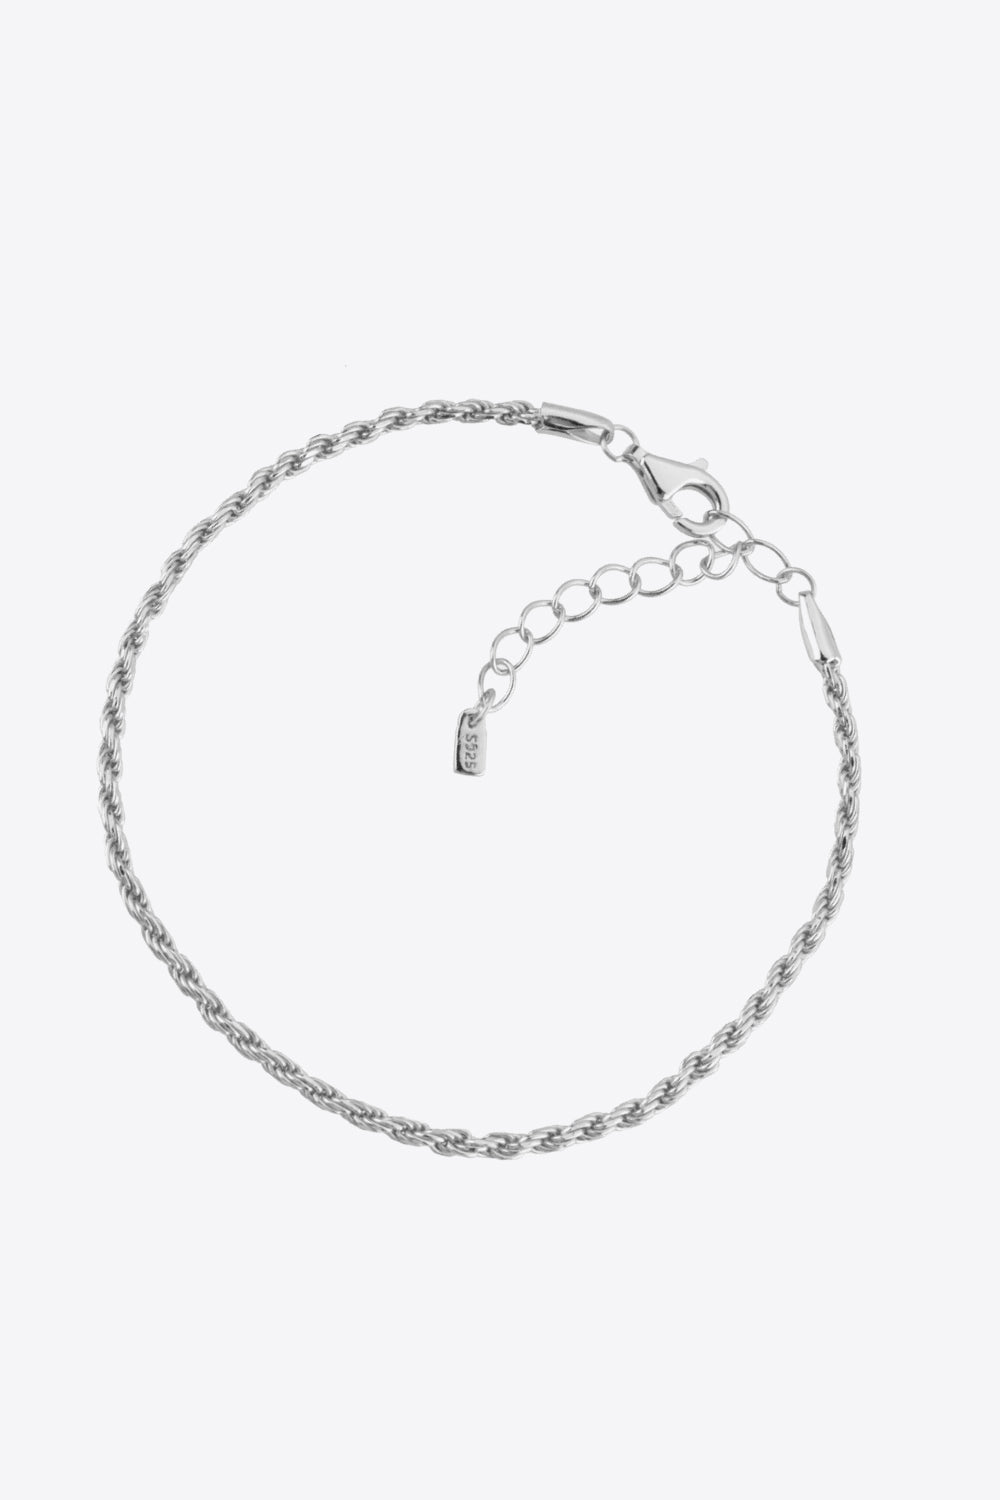 925 Sterling Silver Twisted Bracelet - Women’s Jewelry - Bracelets - 2 - 2024